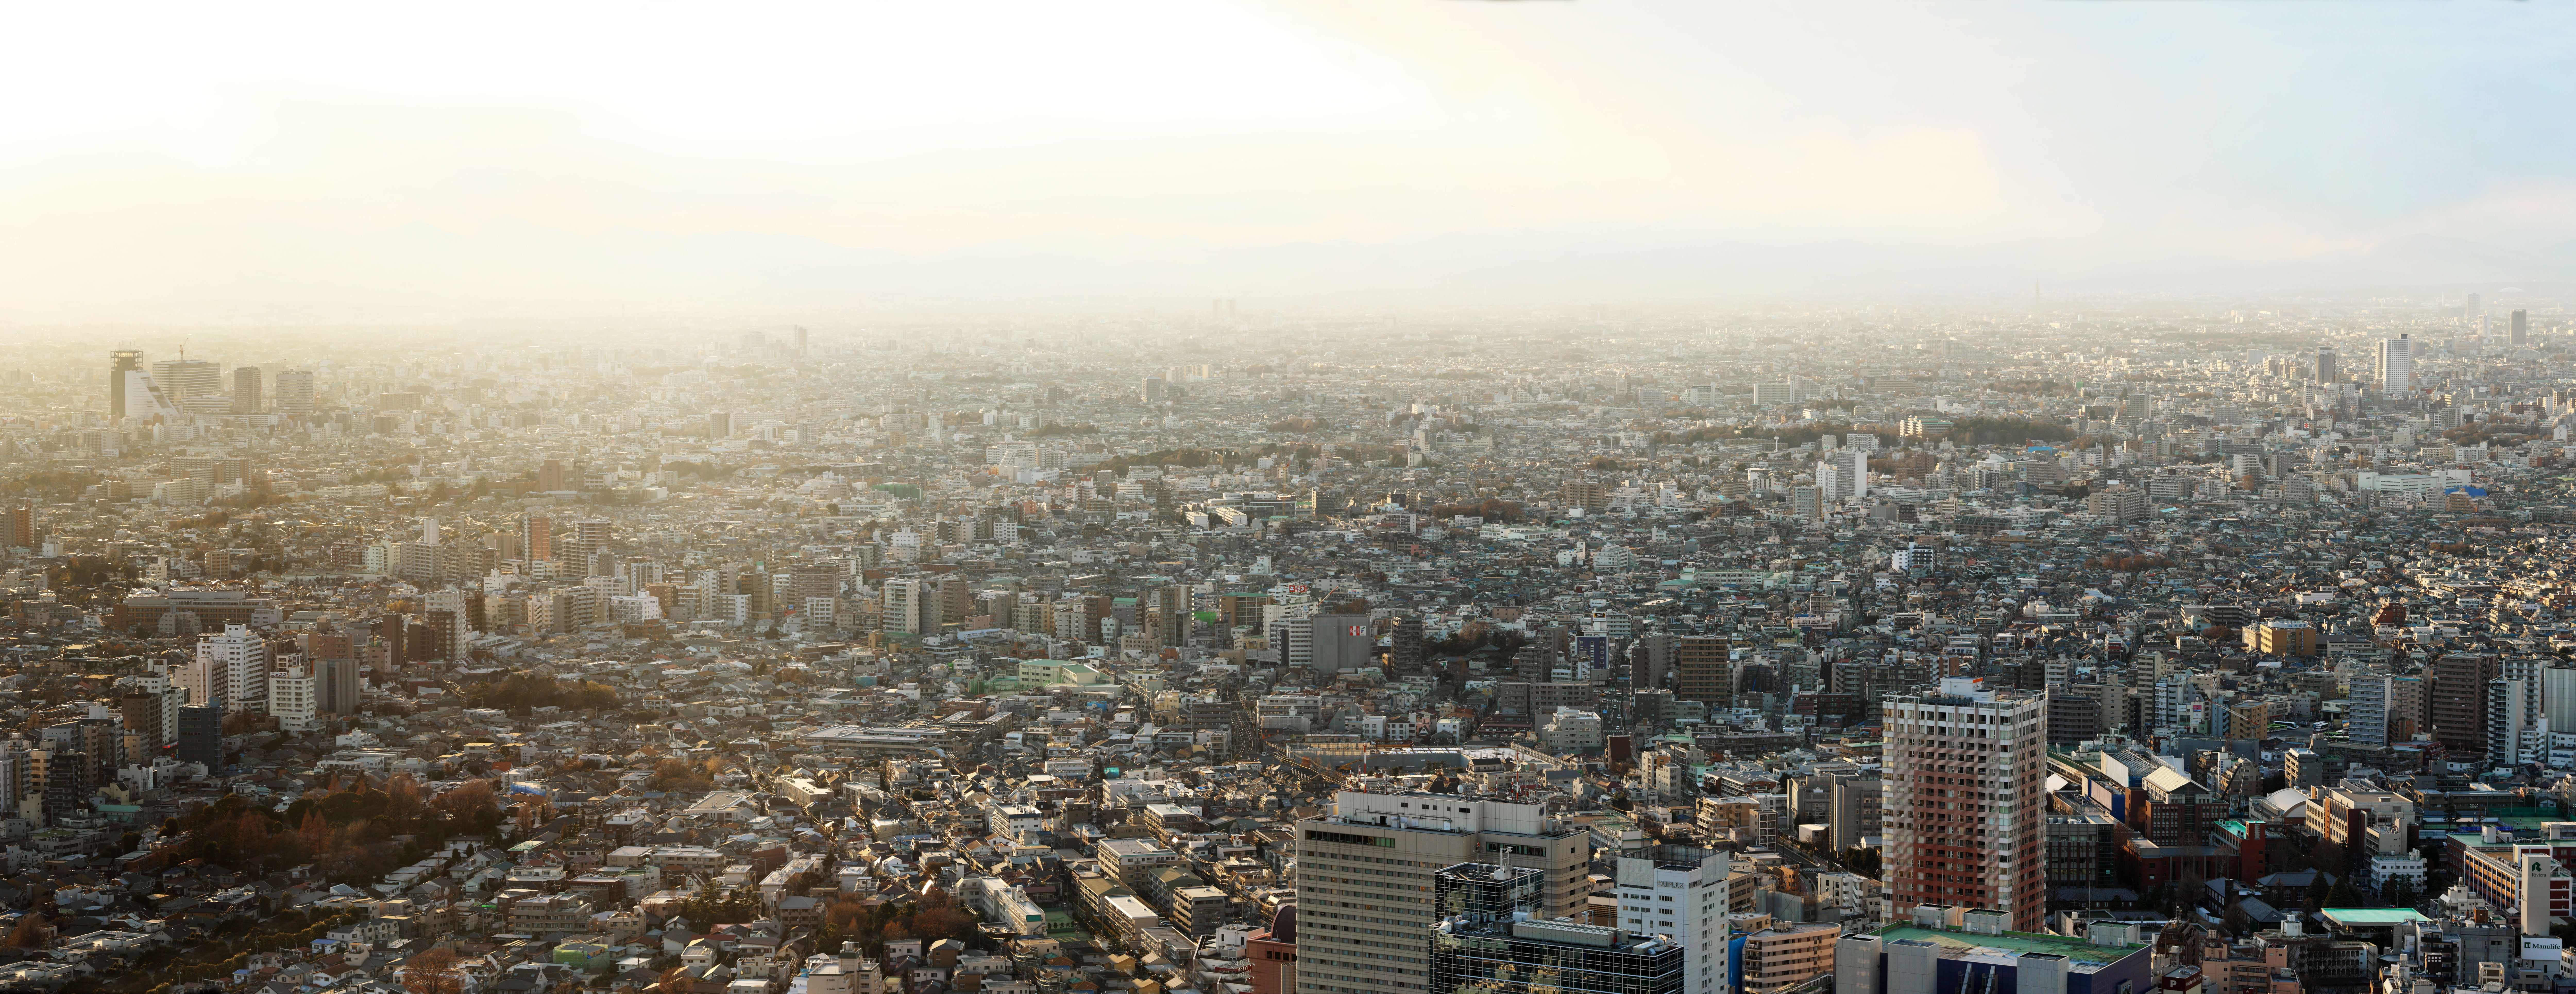 fotografia, material, livra, ajardine, imagine, proveja fotografia,Panorama de Tquio, construindo, Nakano, , 